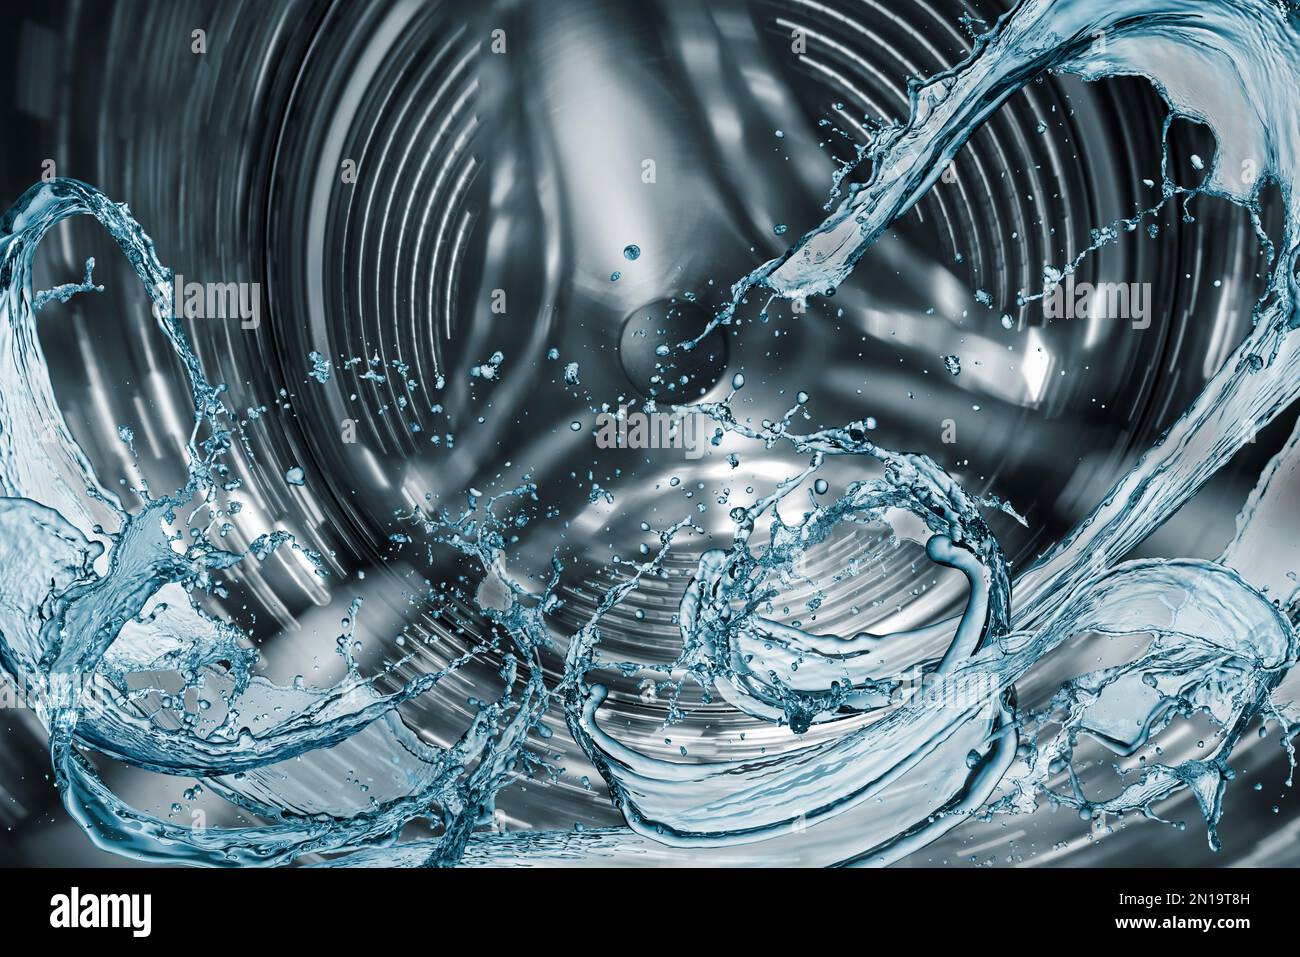 Washing machine drum with water splash. Stock Photo